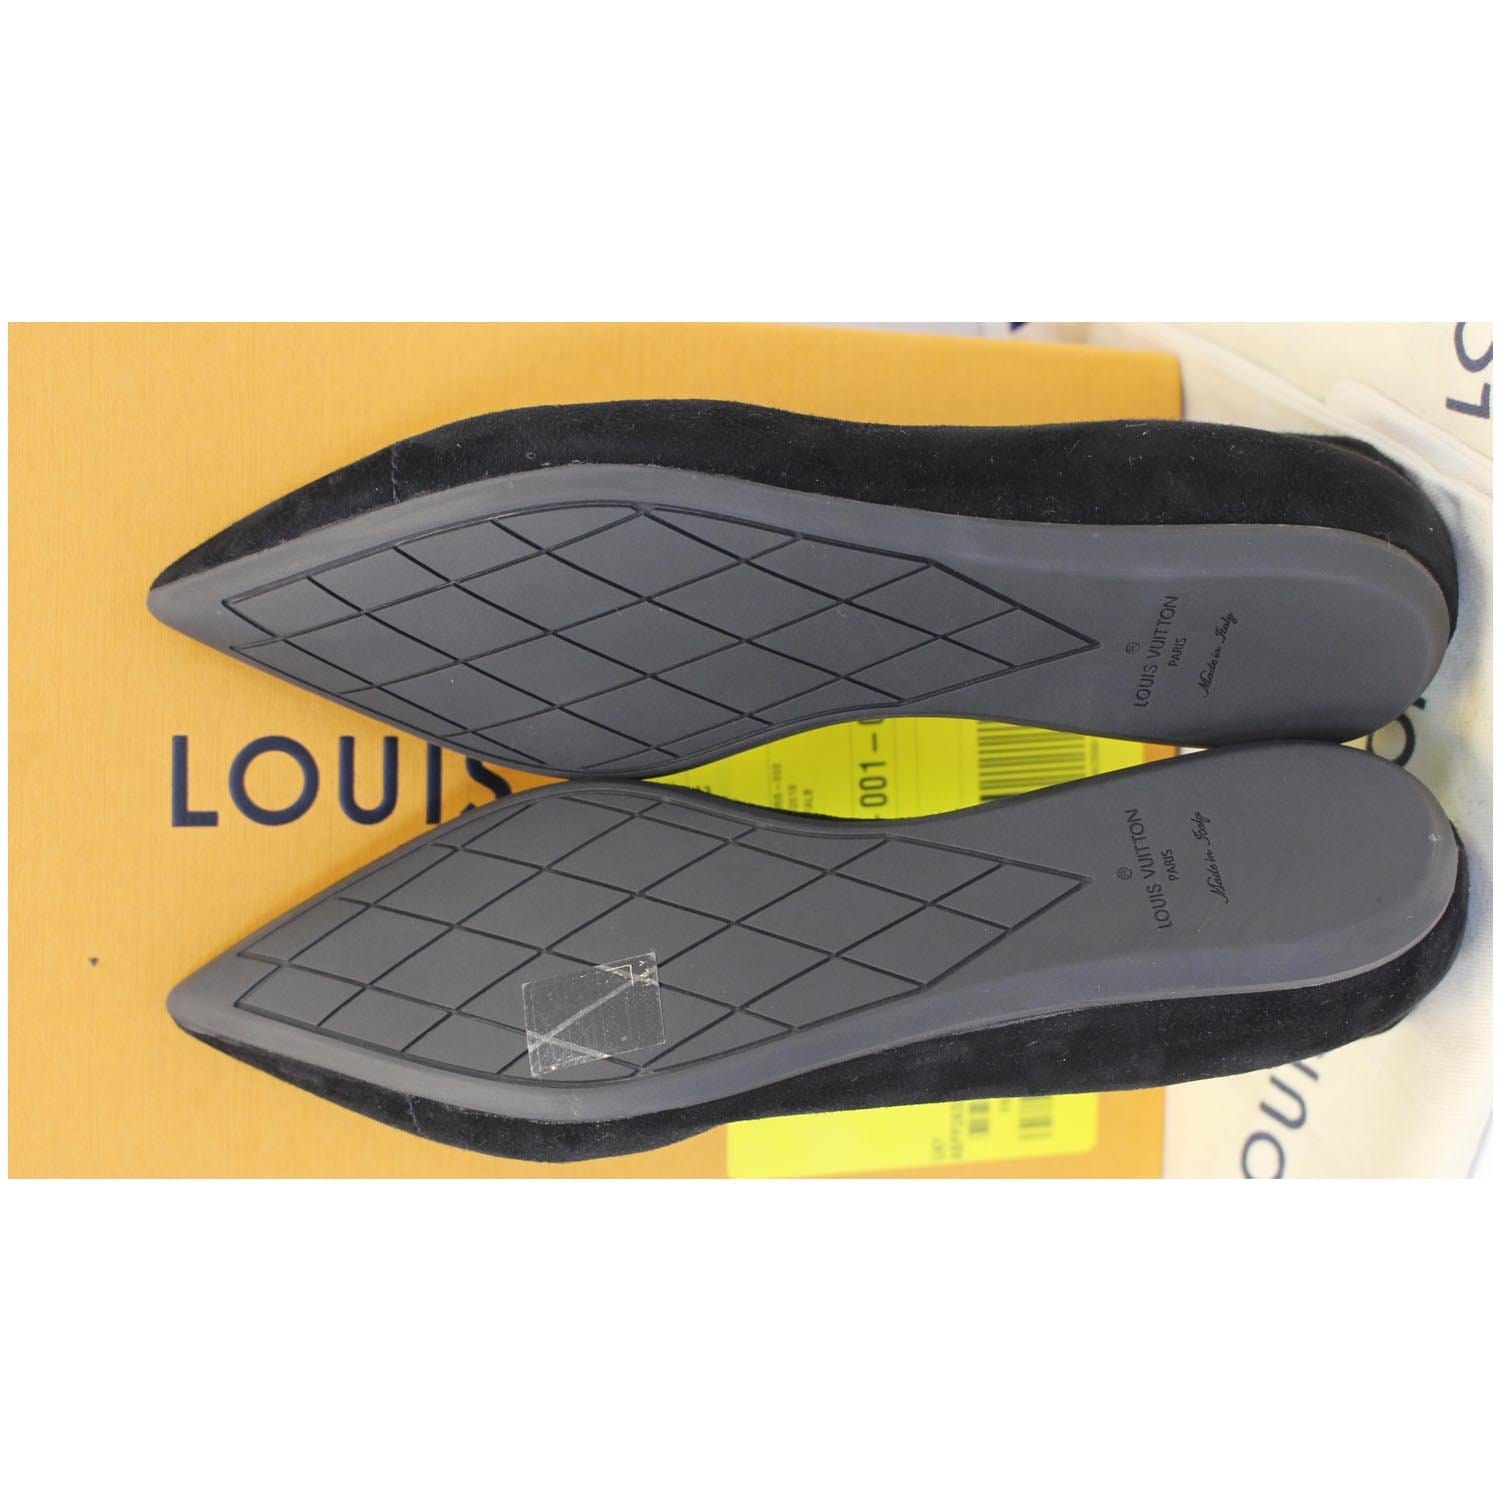 Ballet flats Louis Vuitton Black size 6.5 US in Rubber - 25657751